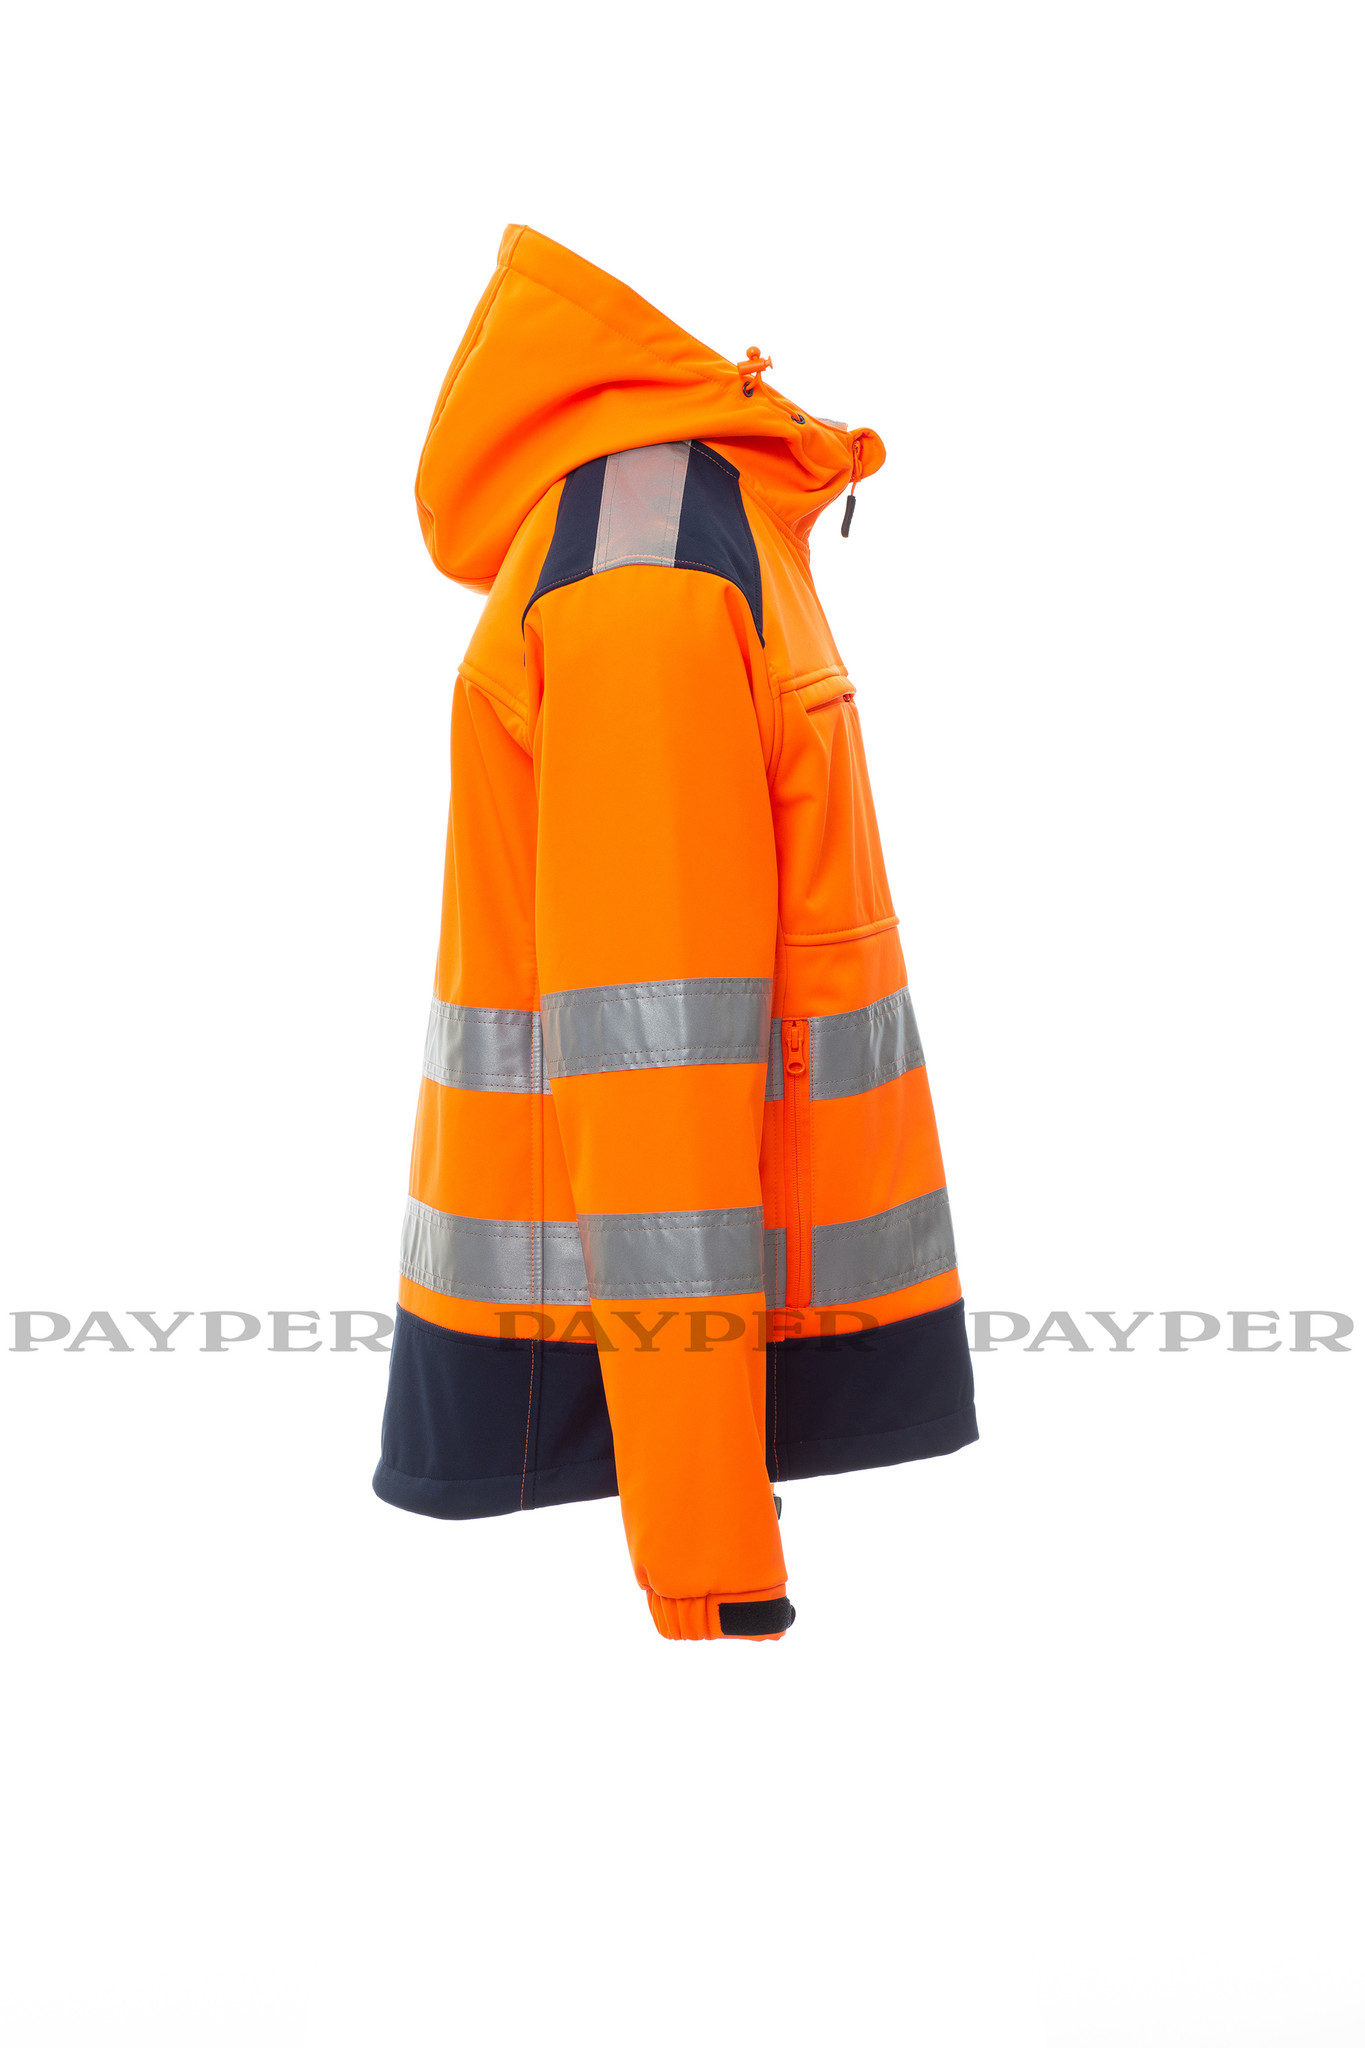 Payper  Shine 2.0 .P2 orange - Herren-Warnschutz-Fleecejacke mit 3 M Streifen  von Payper